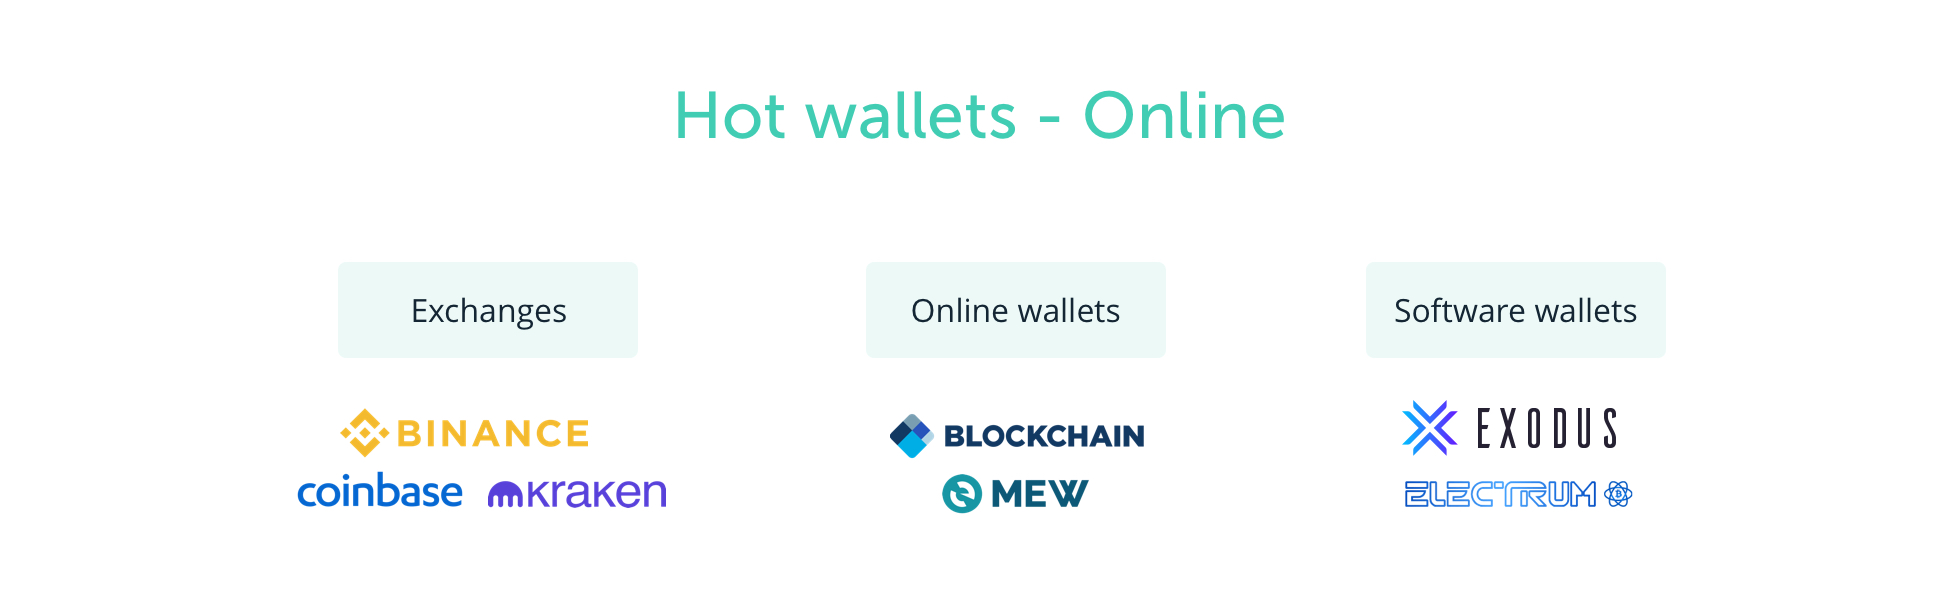 billeteras calientes - billeteras online